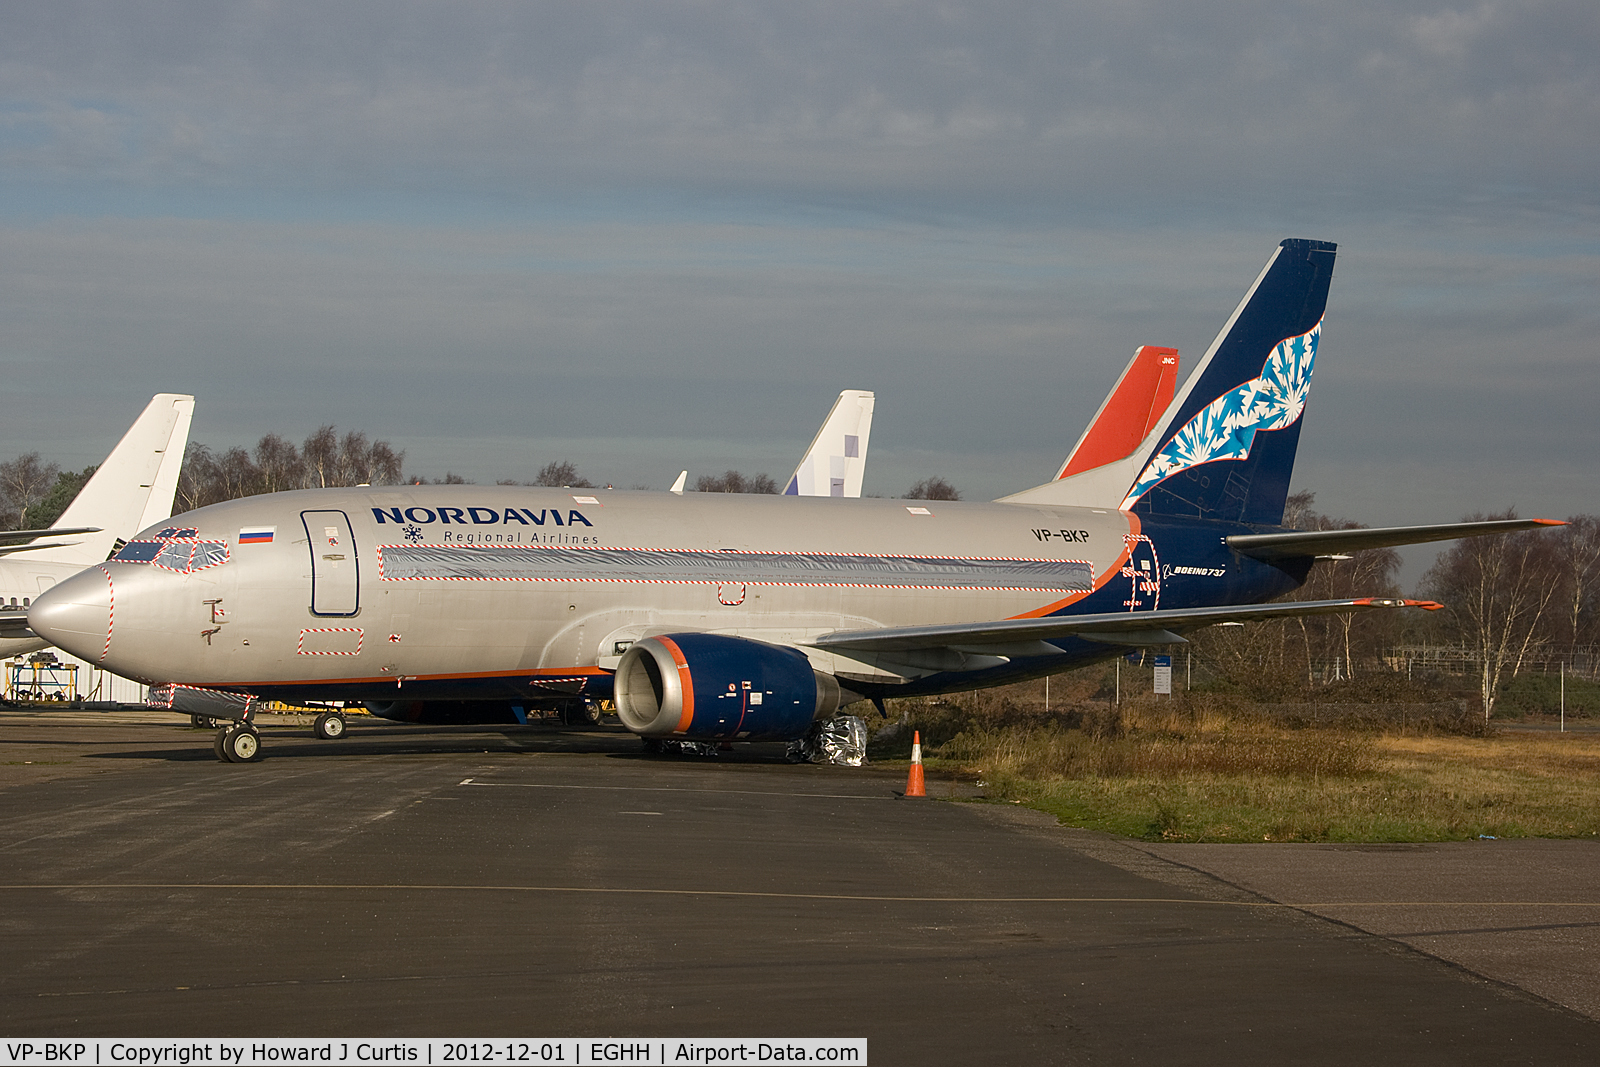 VP-BKP, 1991 Boeing 737-59D C/N 25065, Ex Nordavia, now in store here.